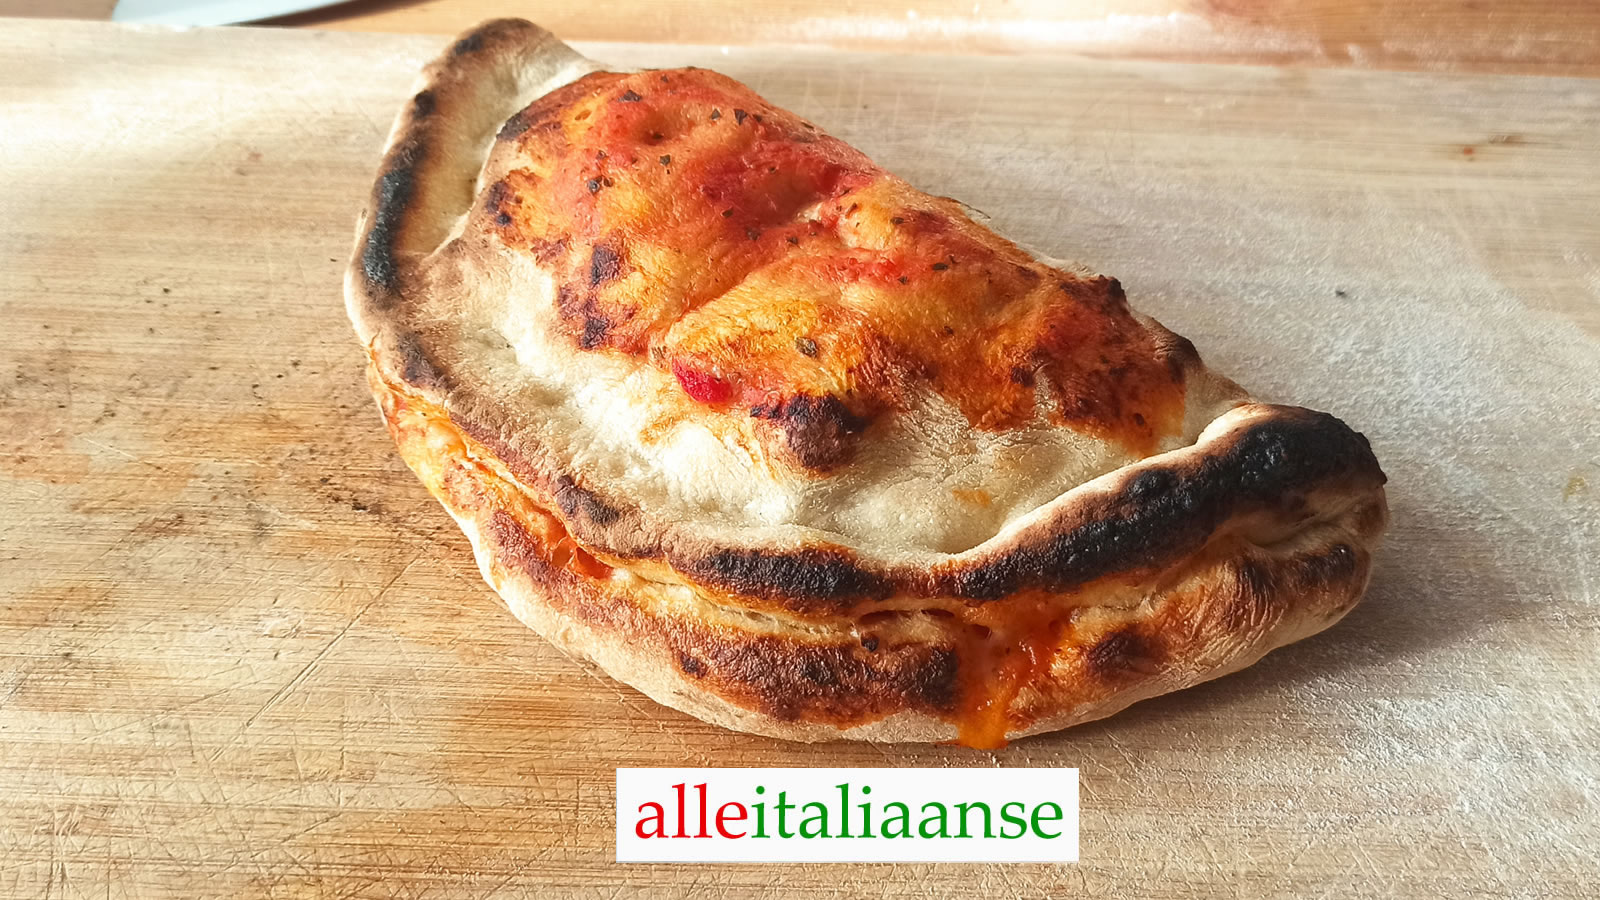 Italiaanse pizza Calzone recept - gebakken door alle Italiaanse